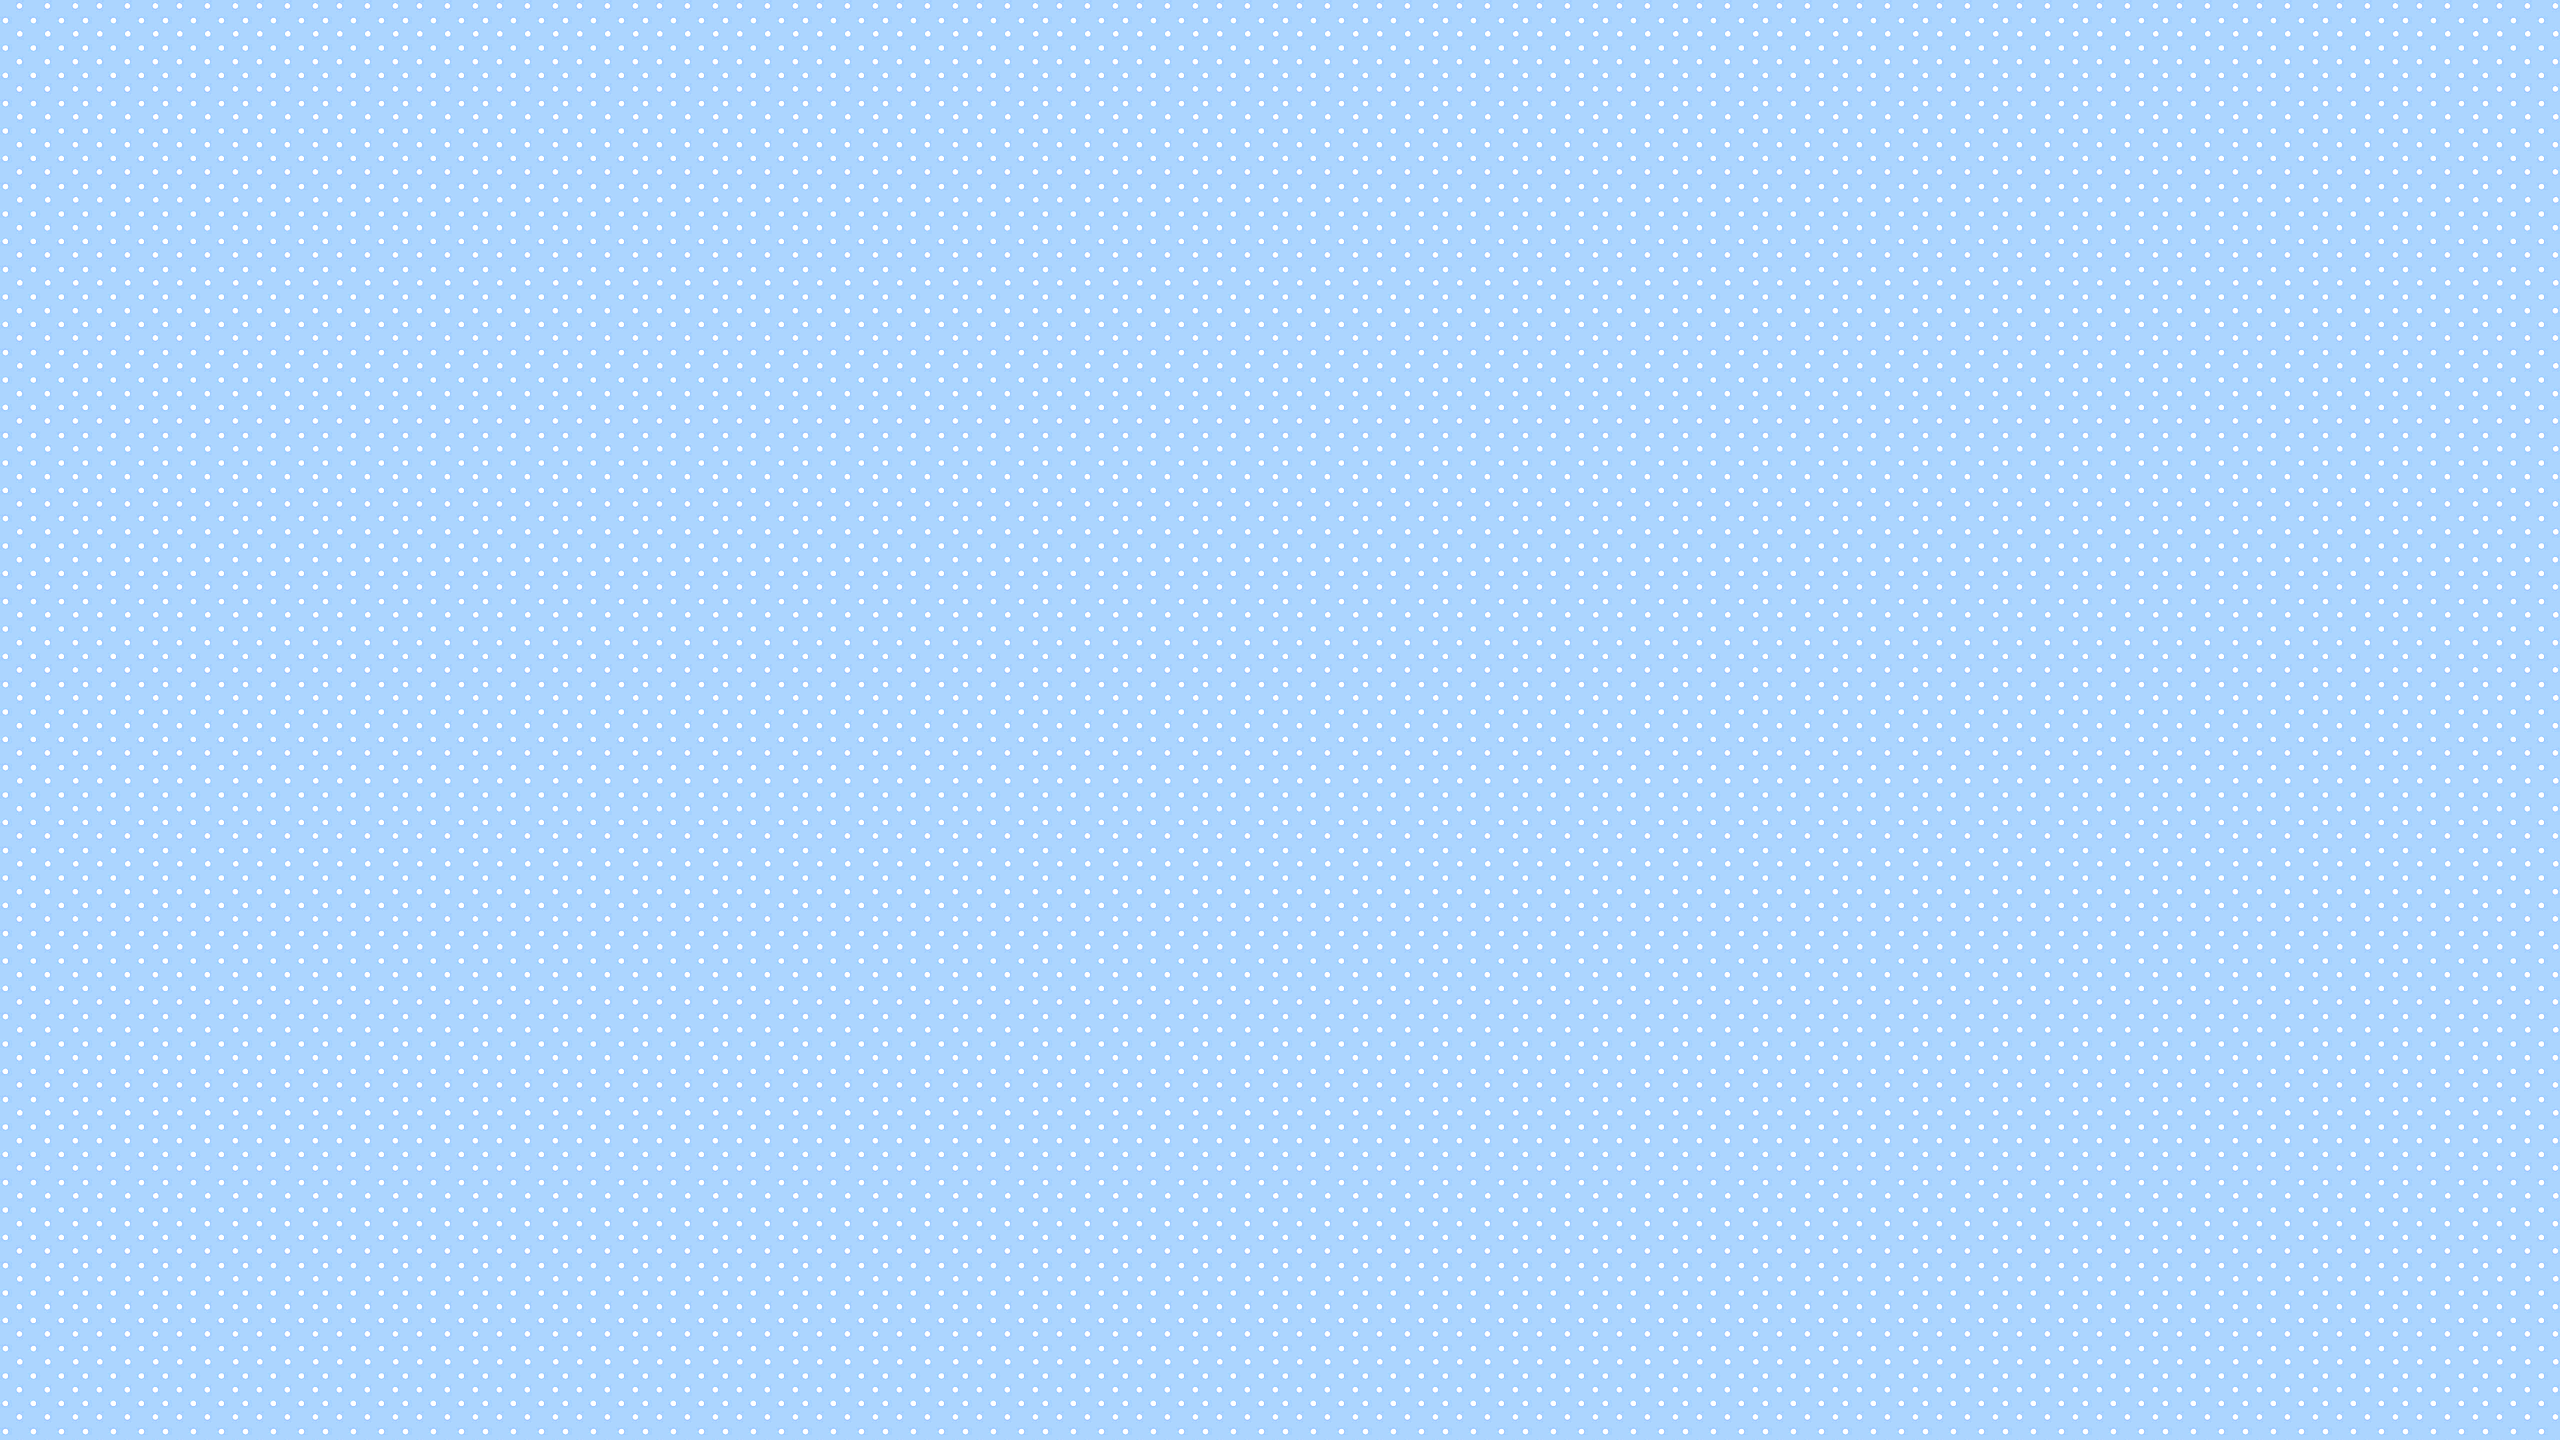 [20+] Pastel Blue Wallpapers | WallpaperSafari